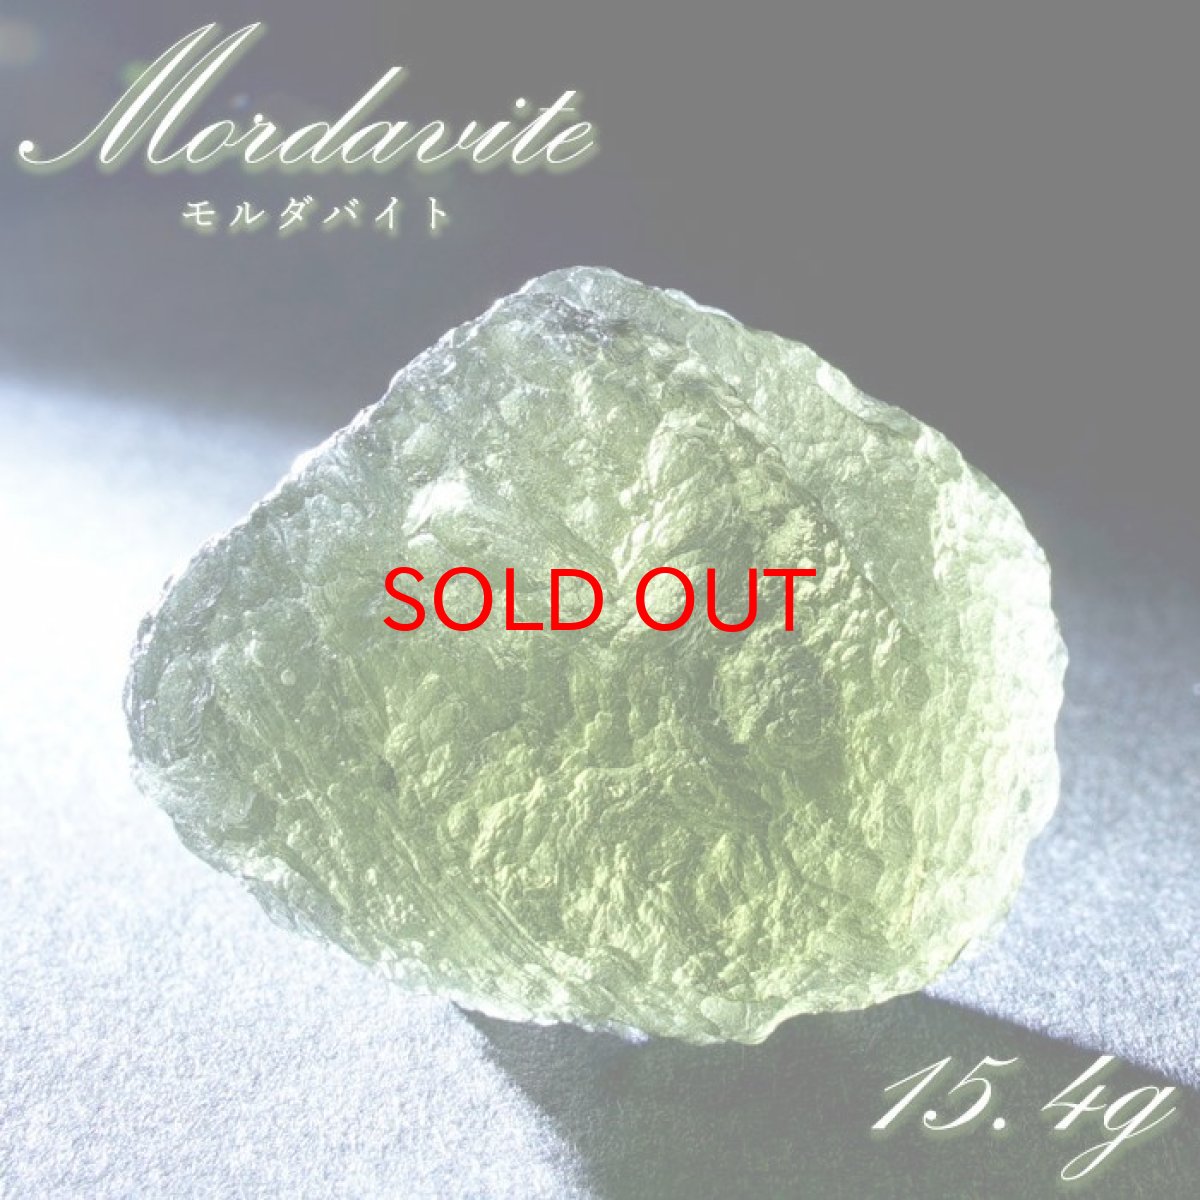 画像1: モルダバイト 原石 15.4g チェコ産 【一点物】 moldavite 高品質 レア 天然ガラス モルダヴ石 パワーストーン カラーストーン (1)